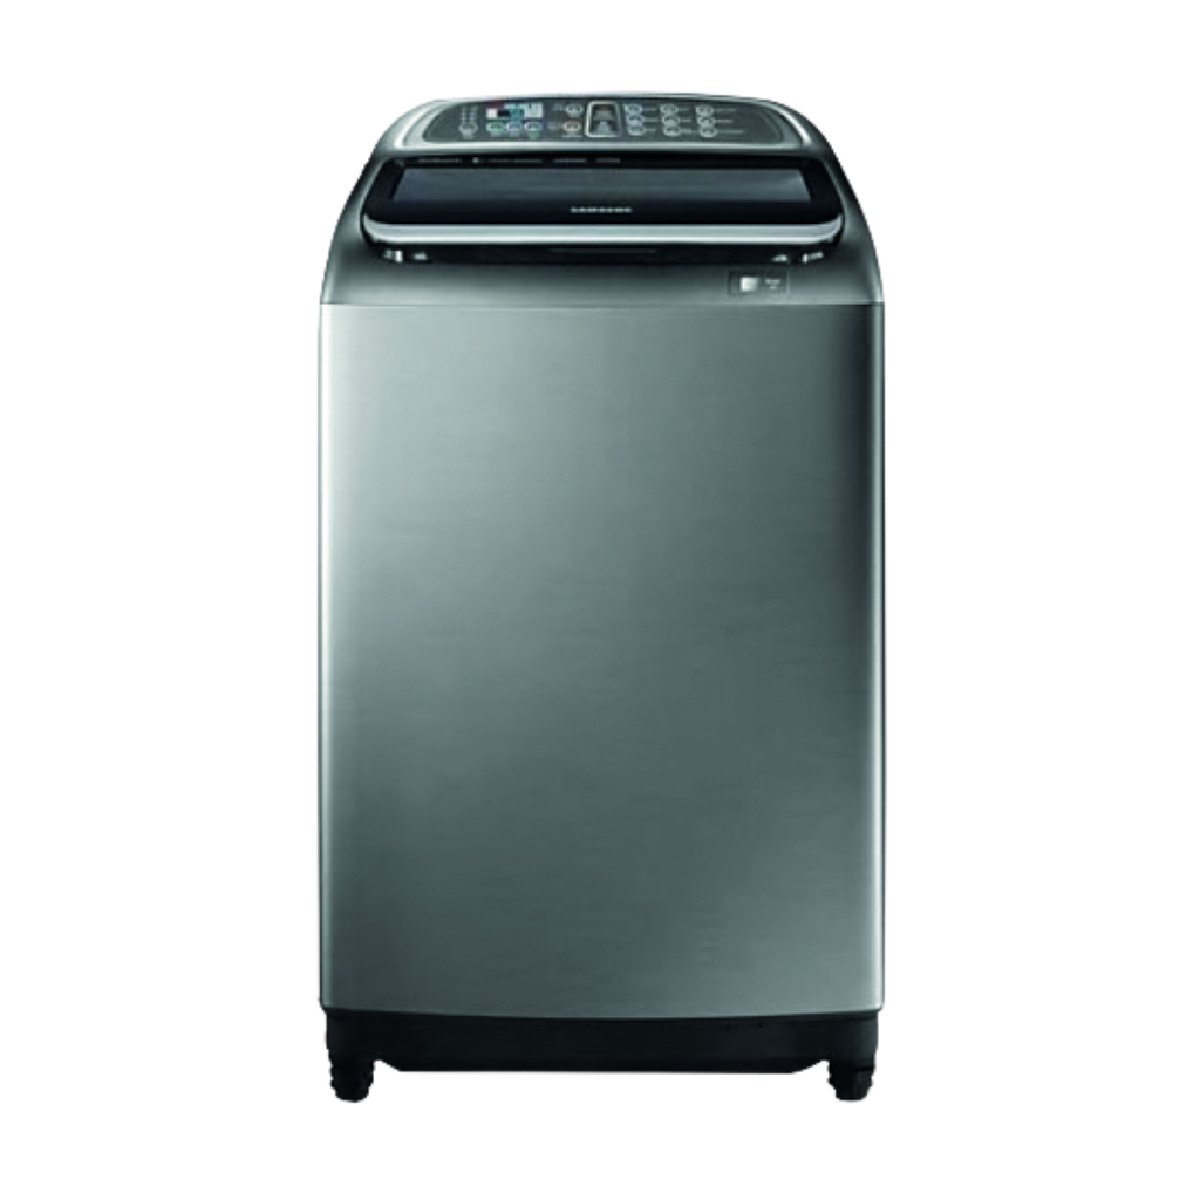 Samsung 18kg Top Loader Washing Machine, Silver